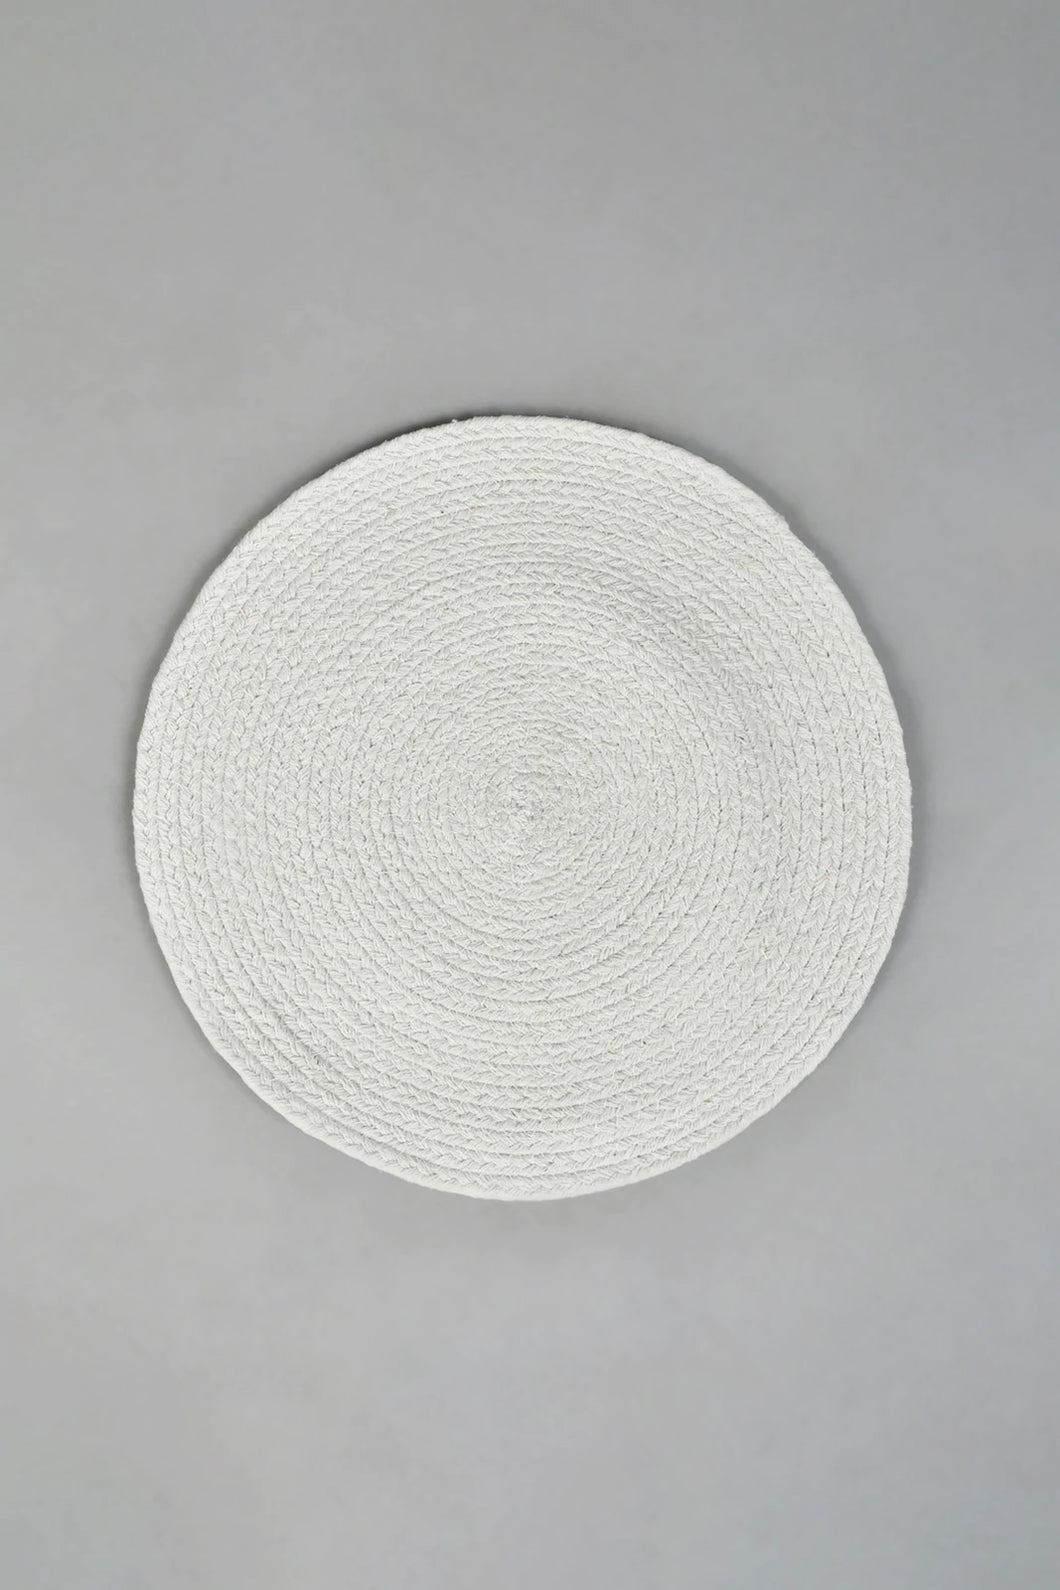 White Round Placemat مفرش طاولة أبيض